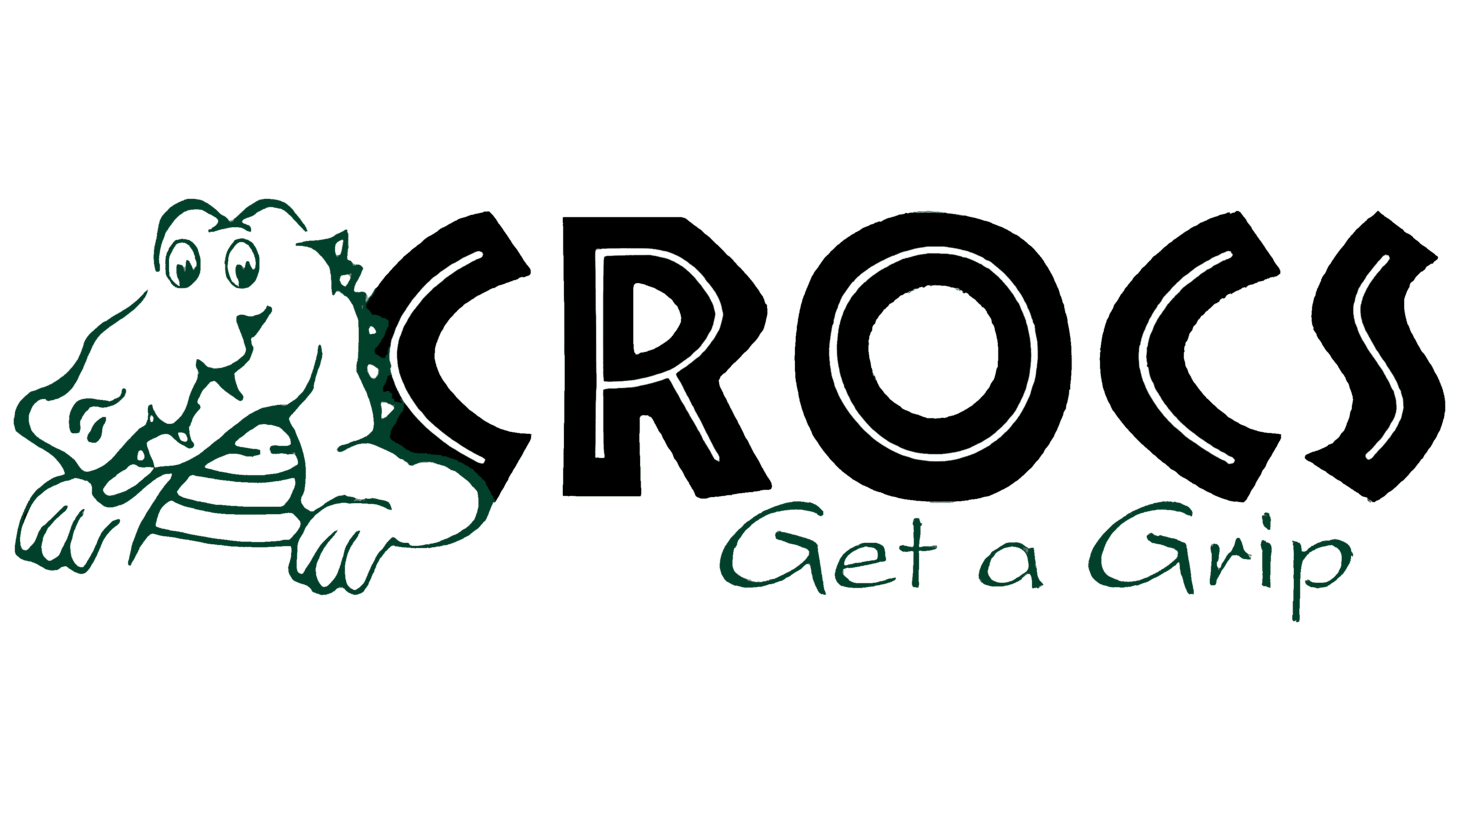 Crocs sign 2002